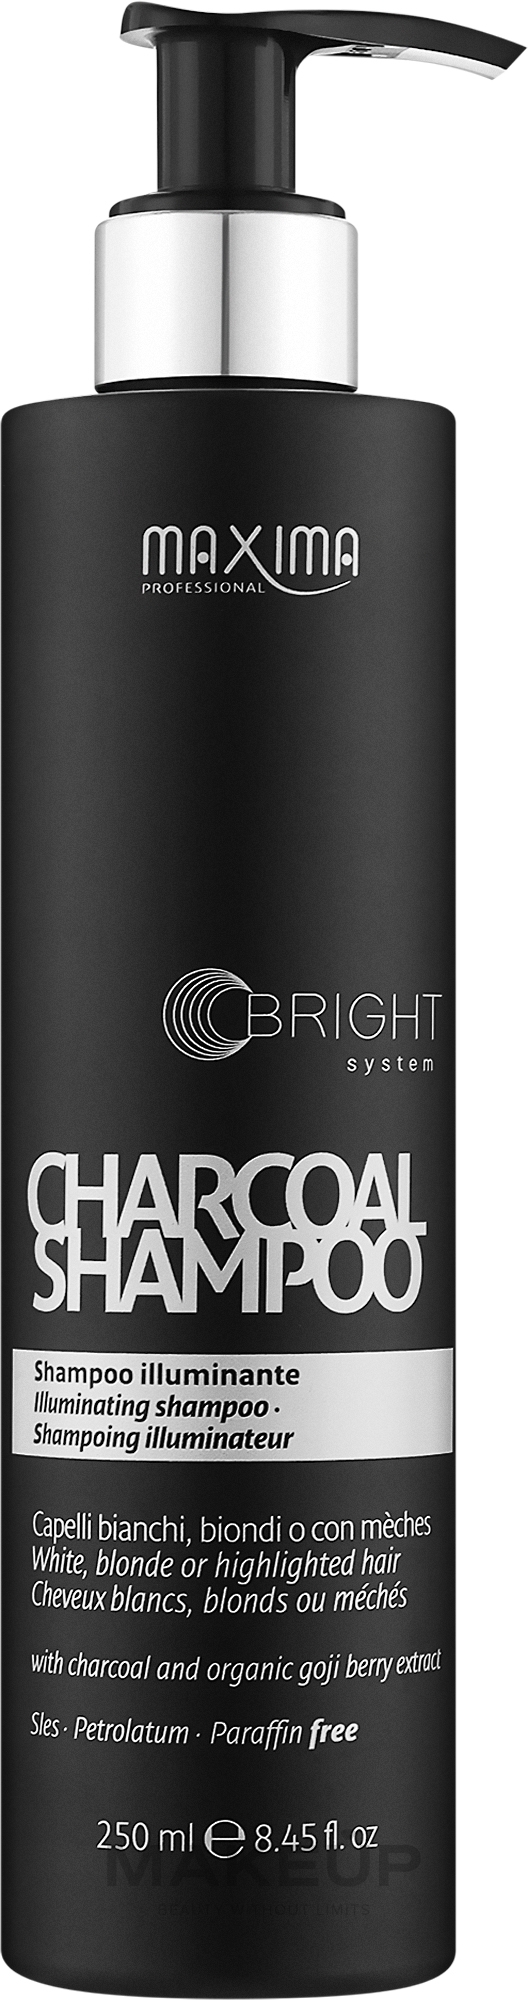 Шампунь для надання холодних відтінків світлому волоссю - Maxima Charcoal Shampoo — фото 250ml